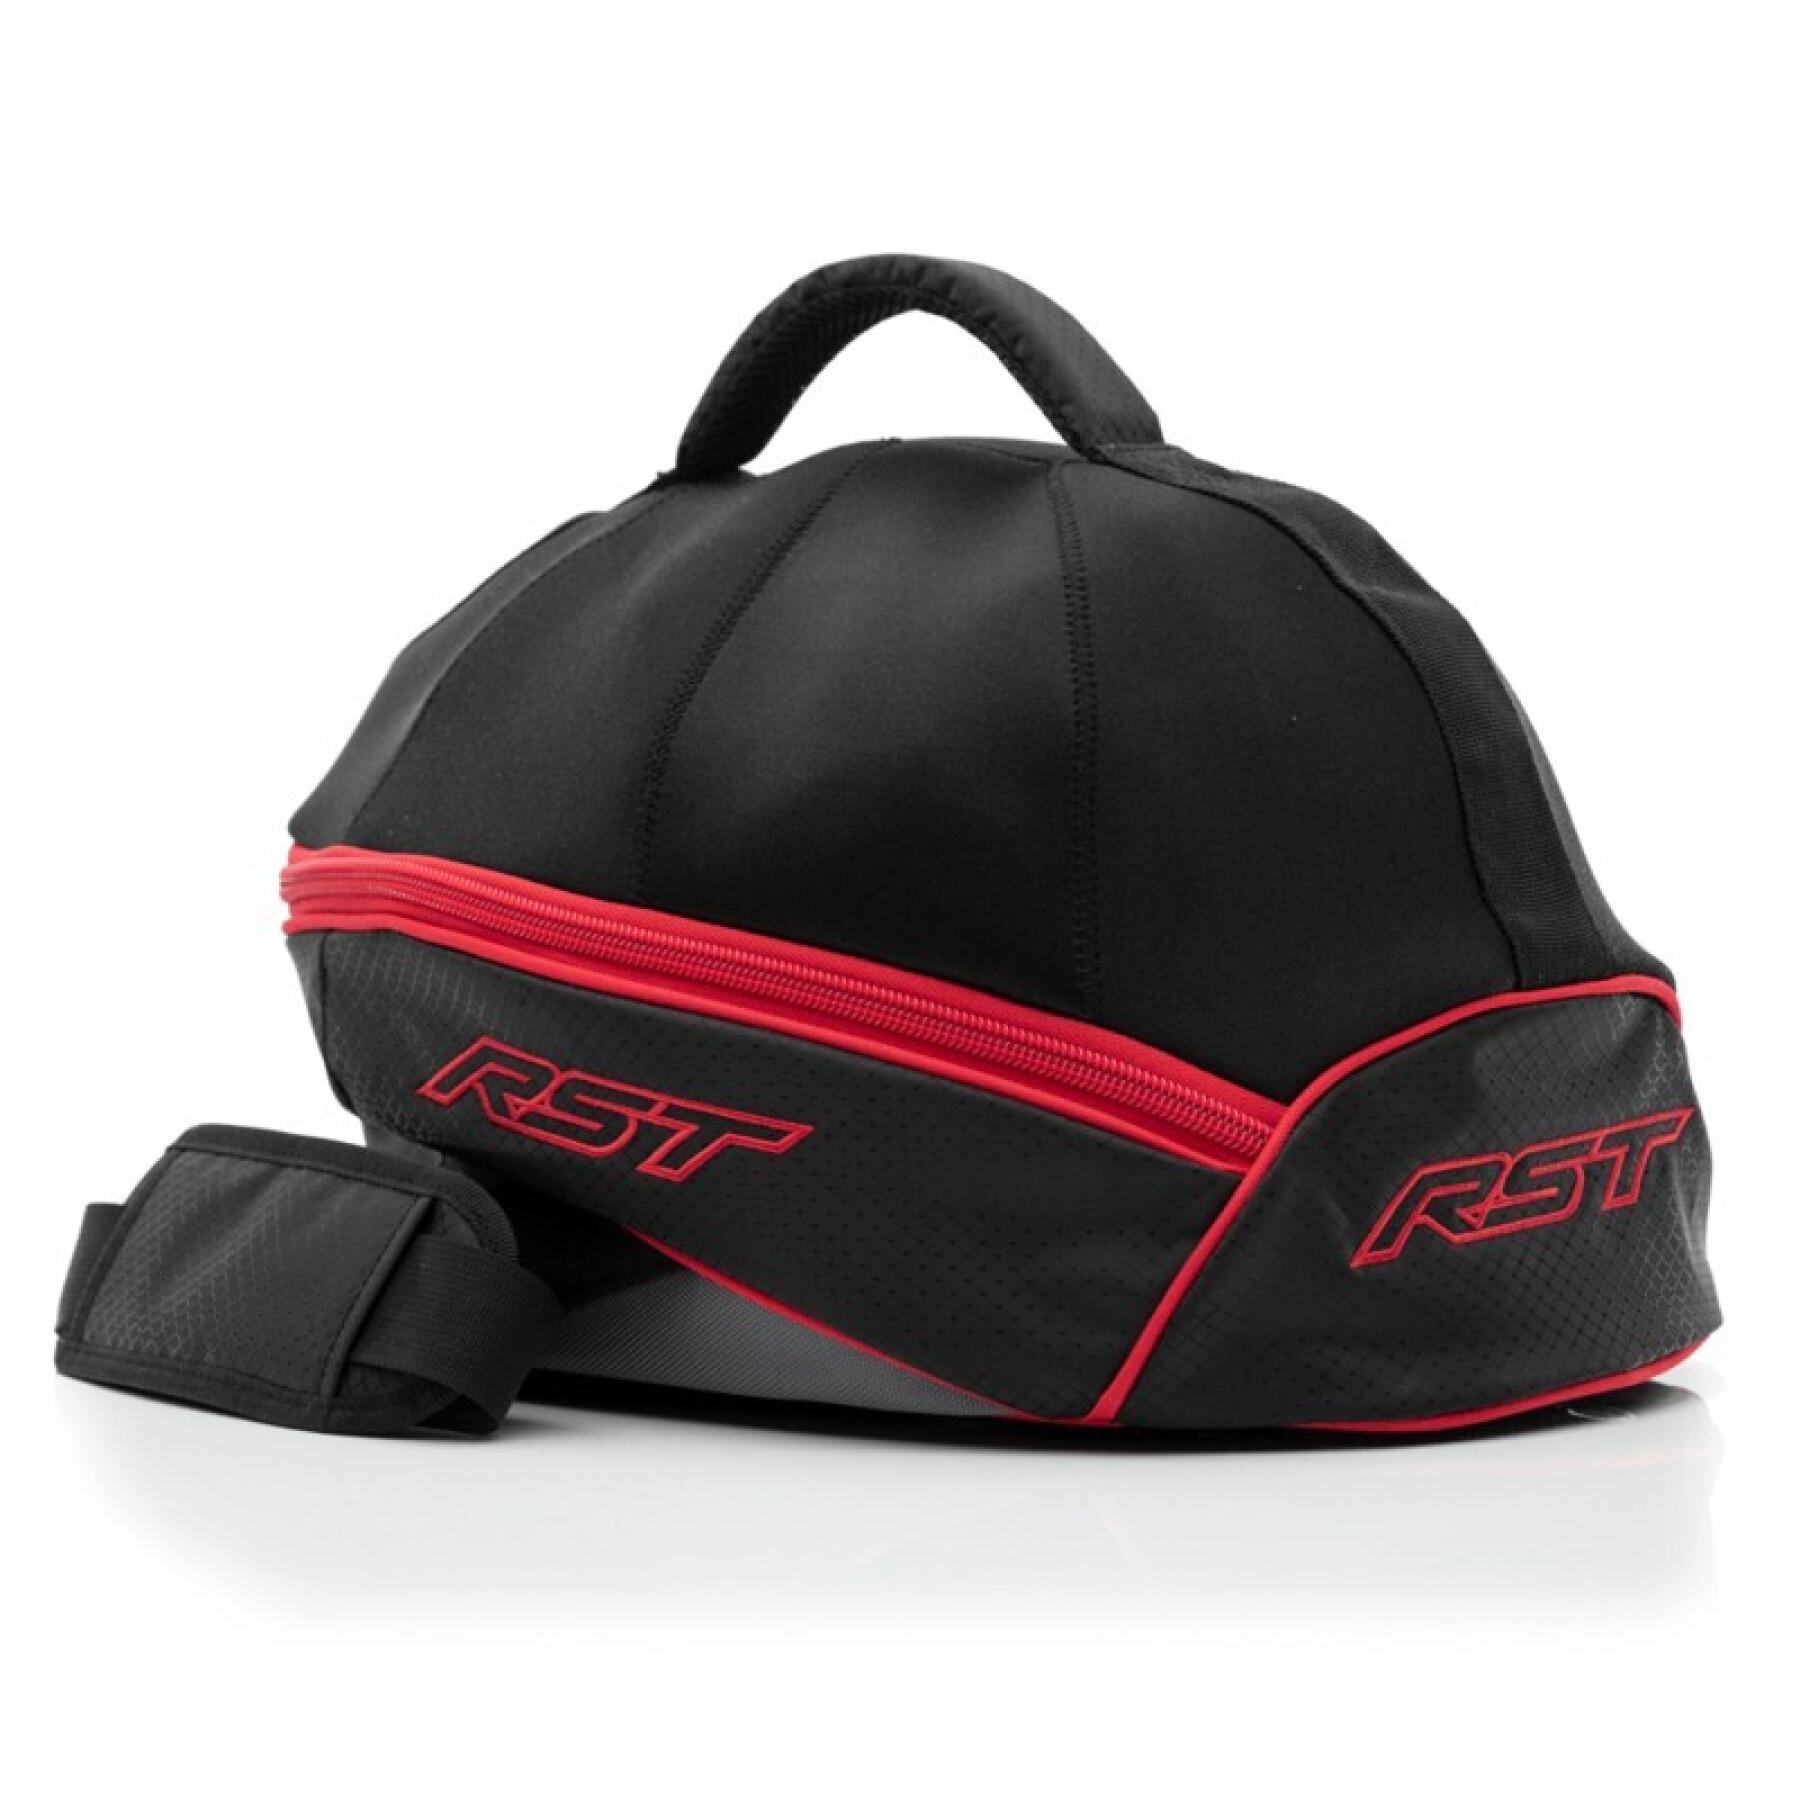 Motorcycle helmet bag RST